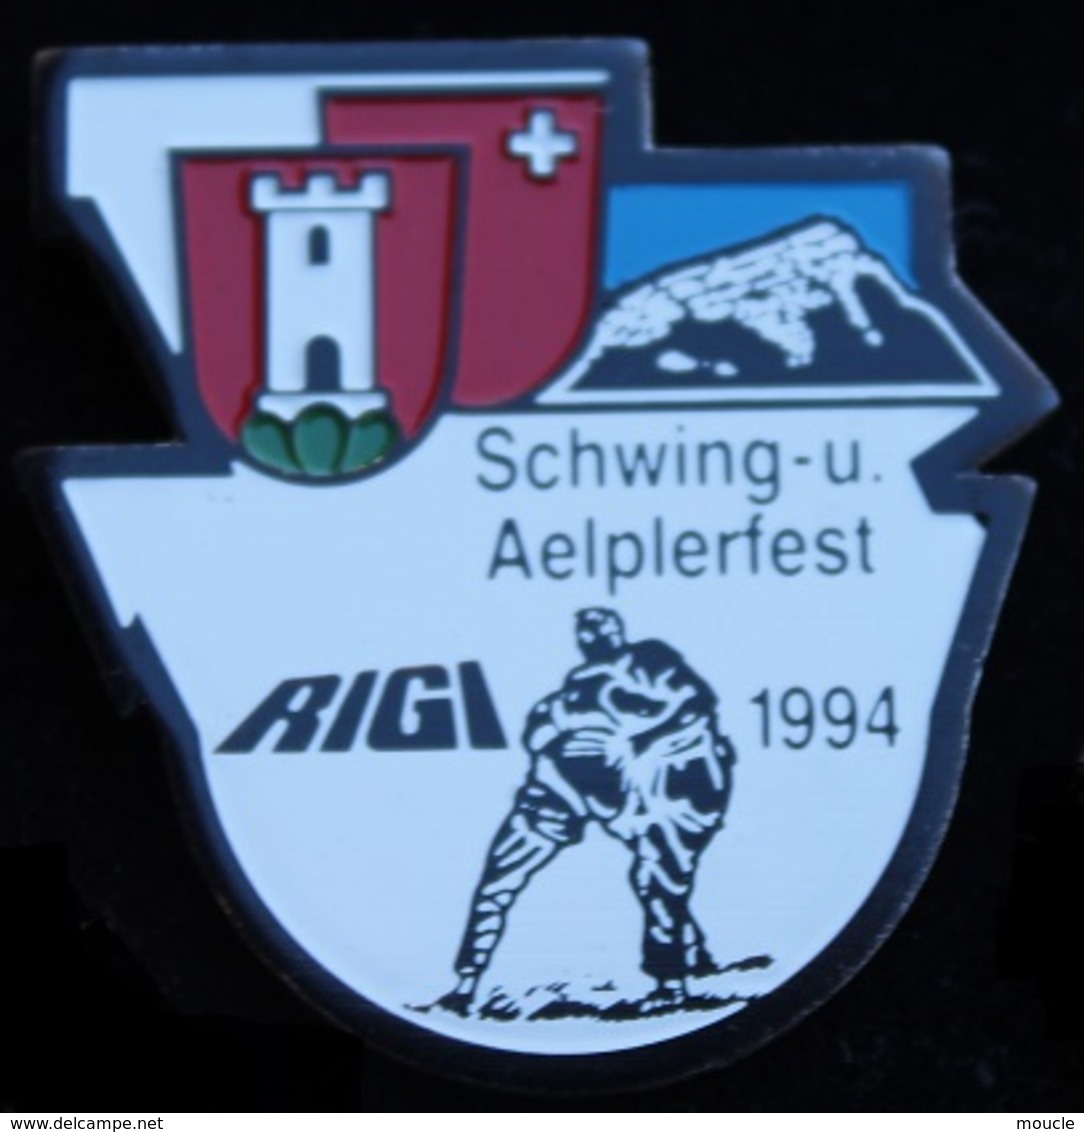 LUTTE SUISSE - LUTTEURS - SCHWING-U. - AELPERFEST - RIGI - 1994 - URI - SCHWEIZ - SWISS - SWITZERLAND -    (21) - Lotta